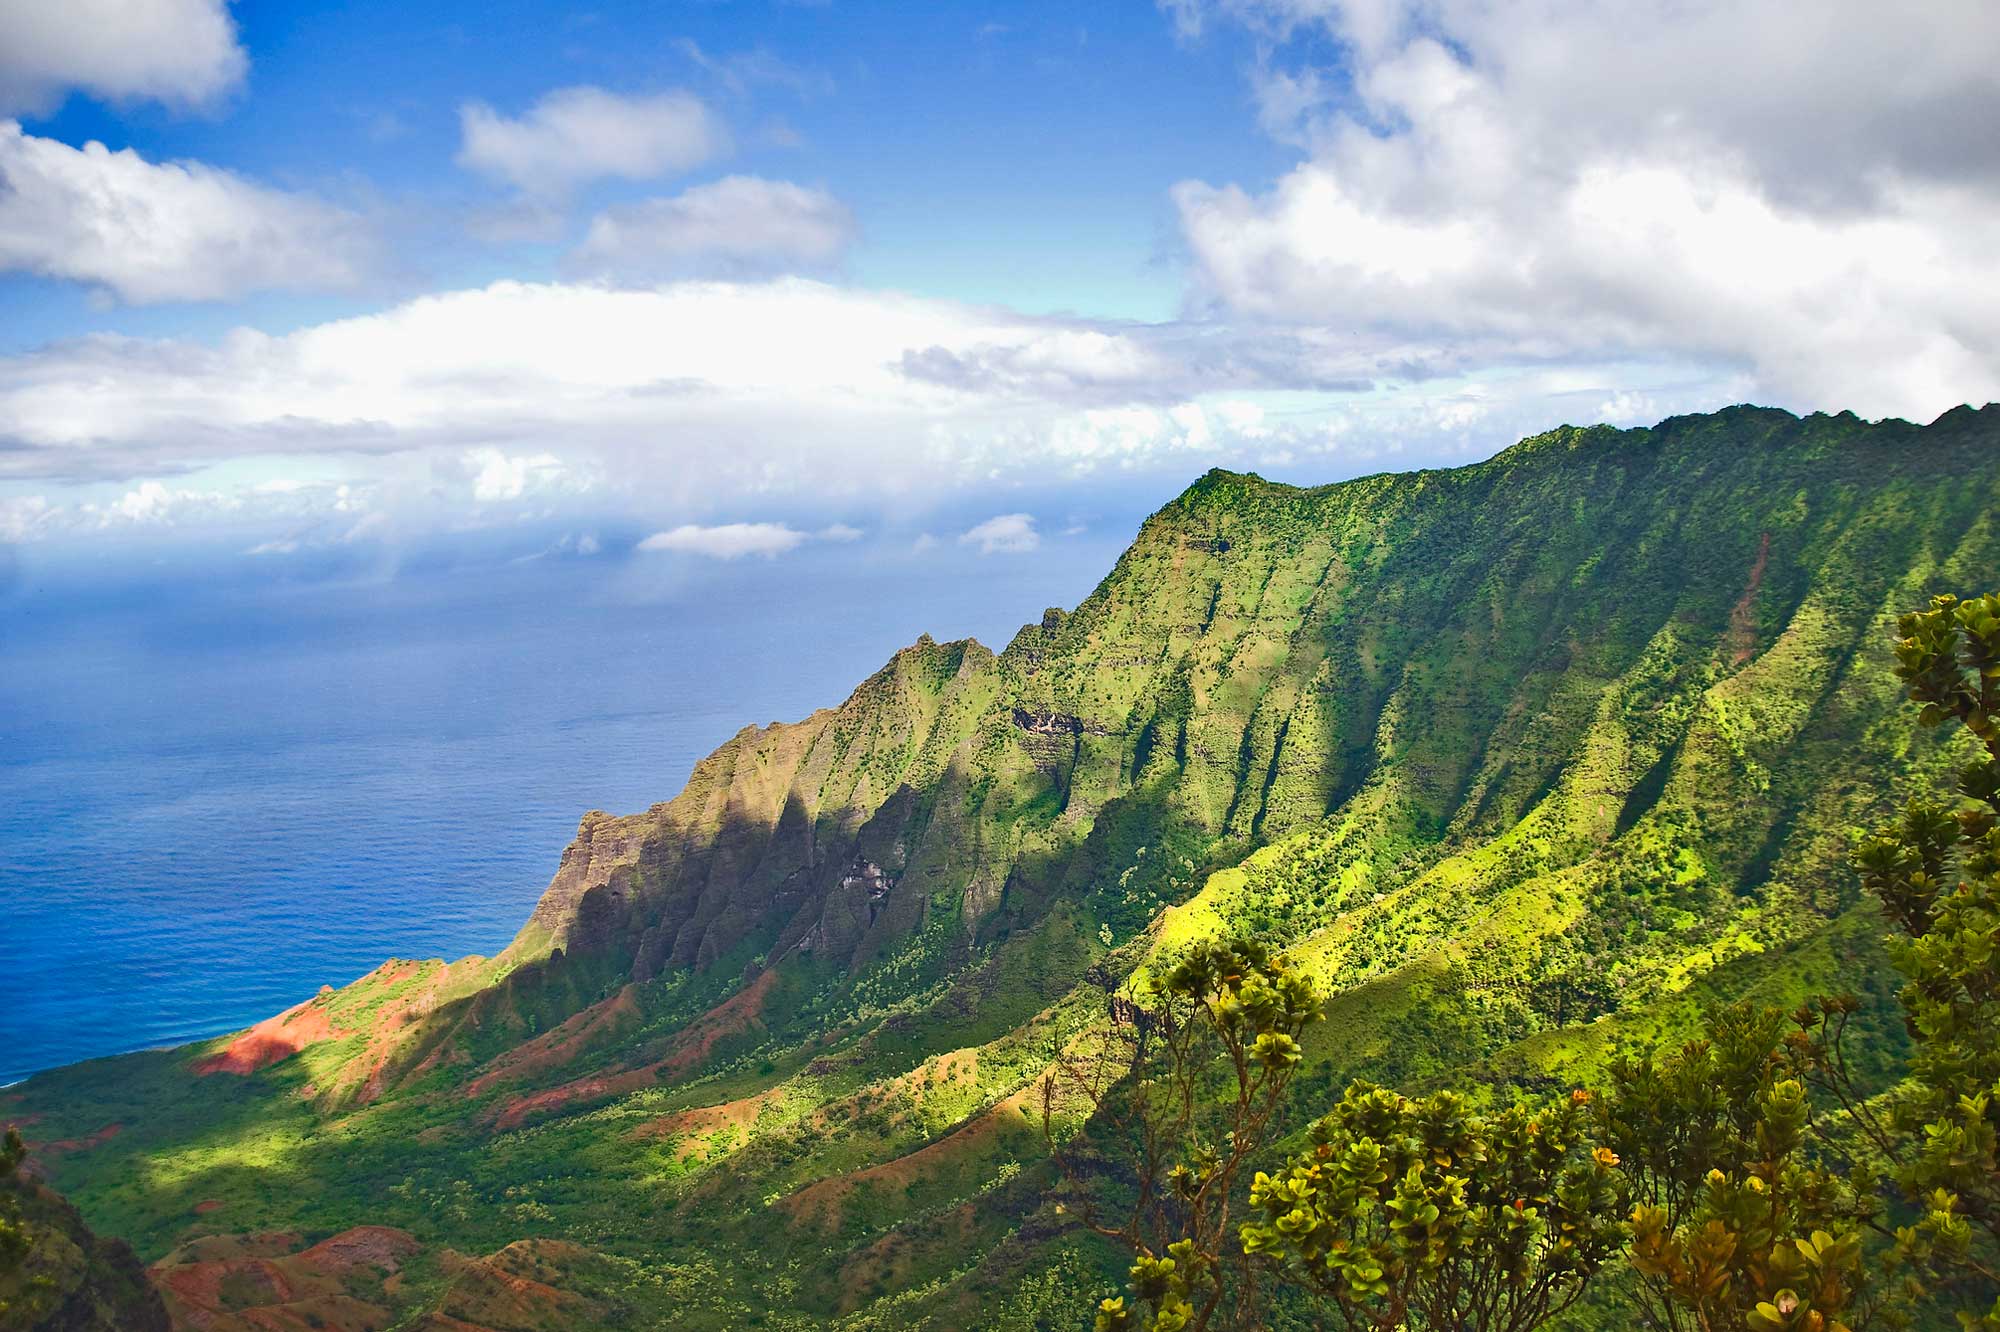 Photograph of the Na Pali coast, Kaua‘i, Hawaii.